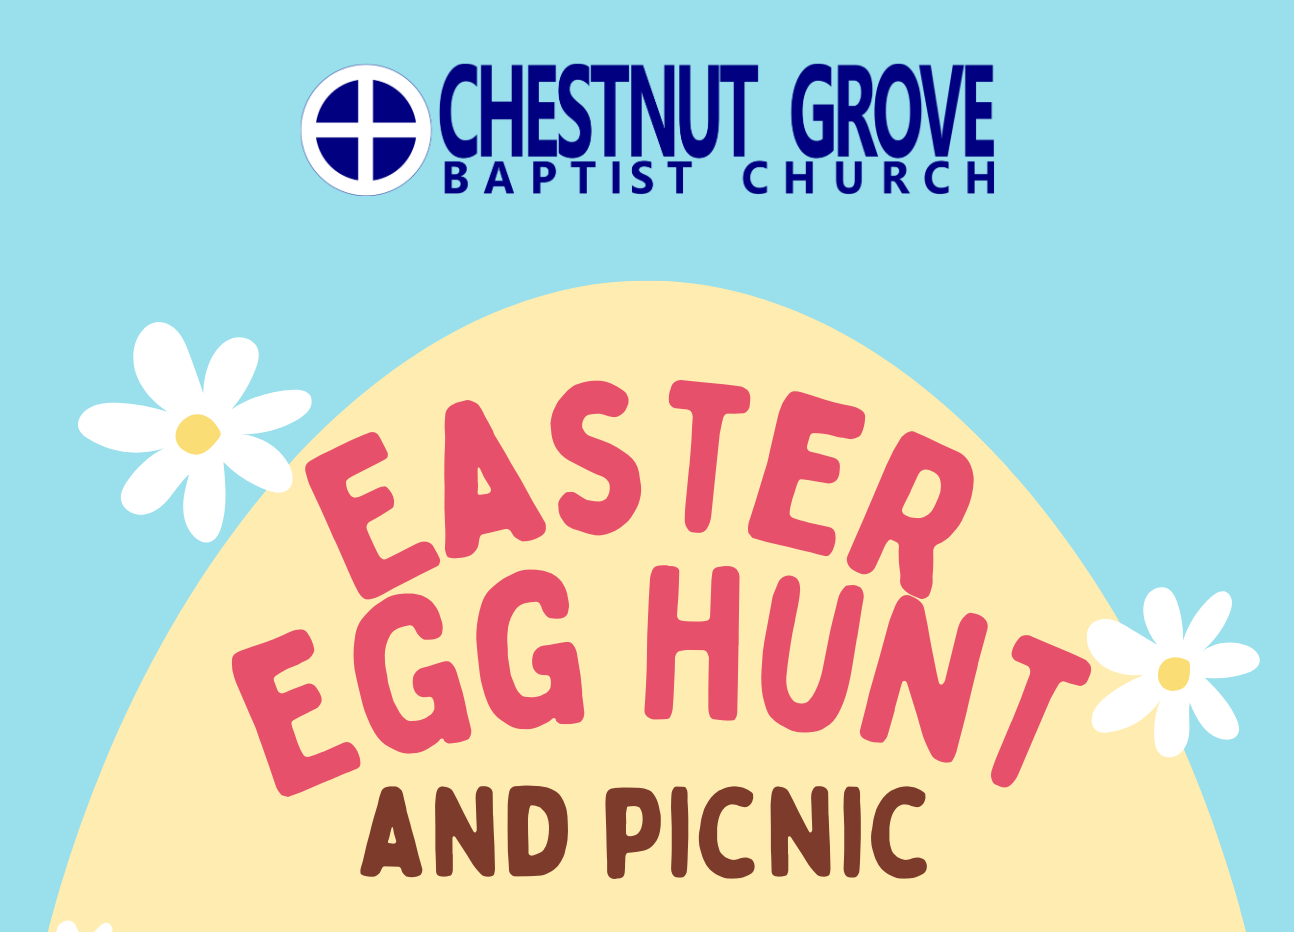 Chestnut Grove Picnic & Egg Hunt